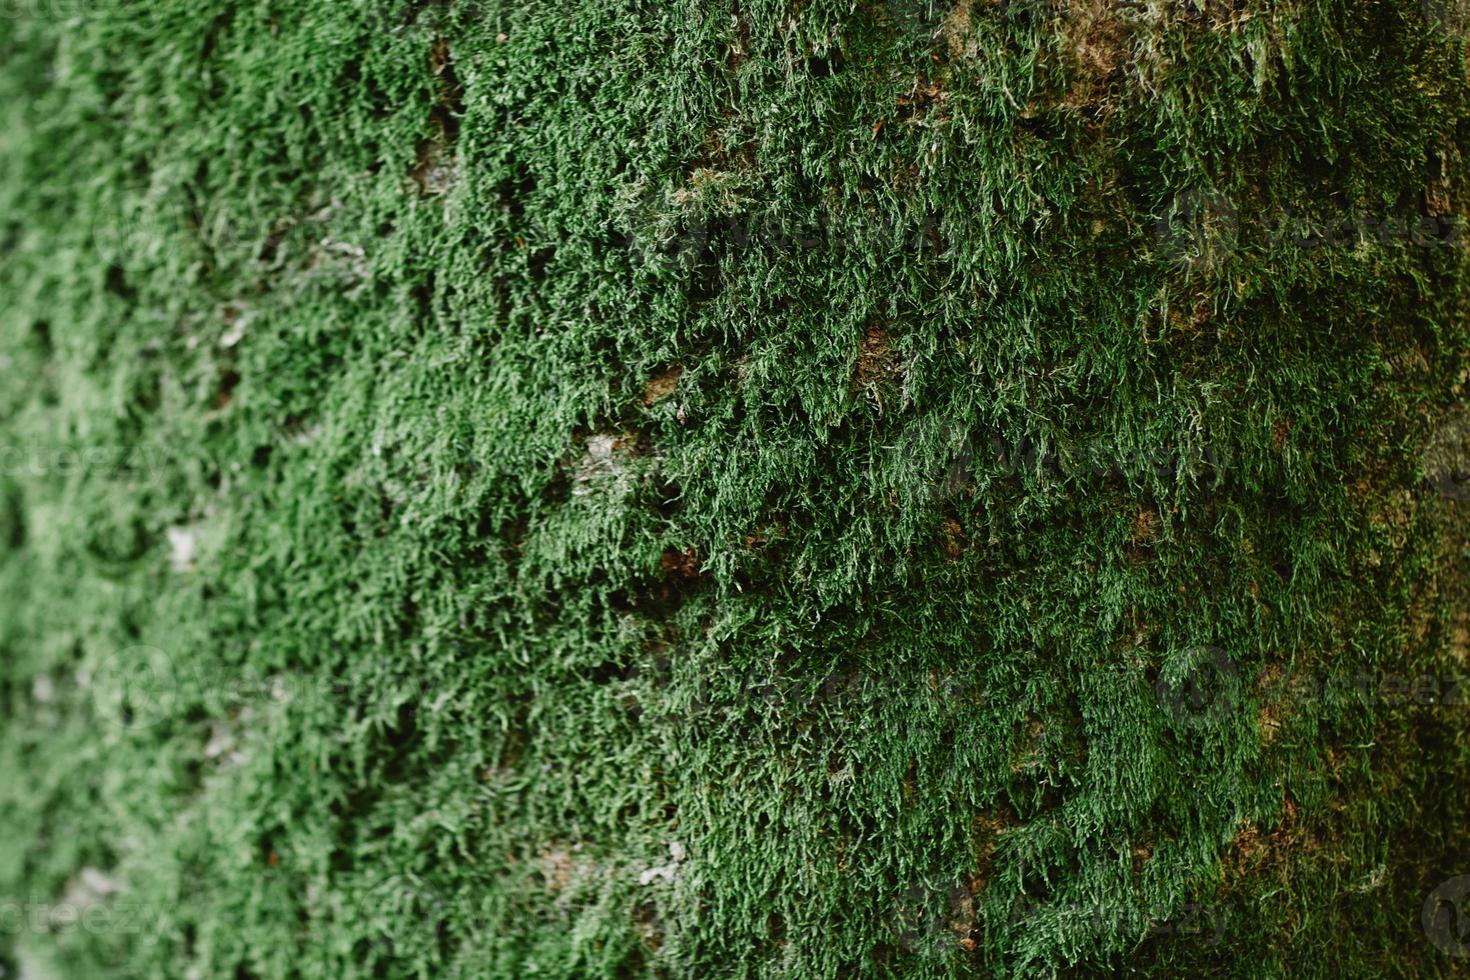 närbild av grön mossa på trä under regnperioden, selektiv fokus, miljö koncept, kopia utrymme. grön bark på trädstamnärbild. mossa växer kraftigt på barken på detta träd foto